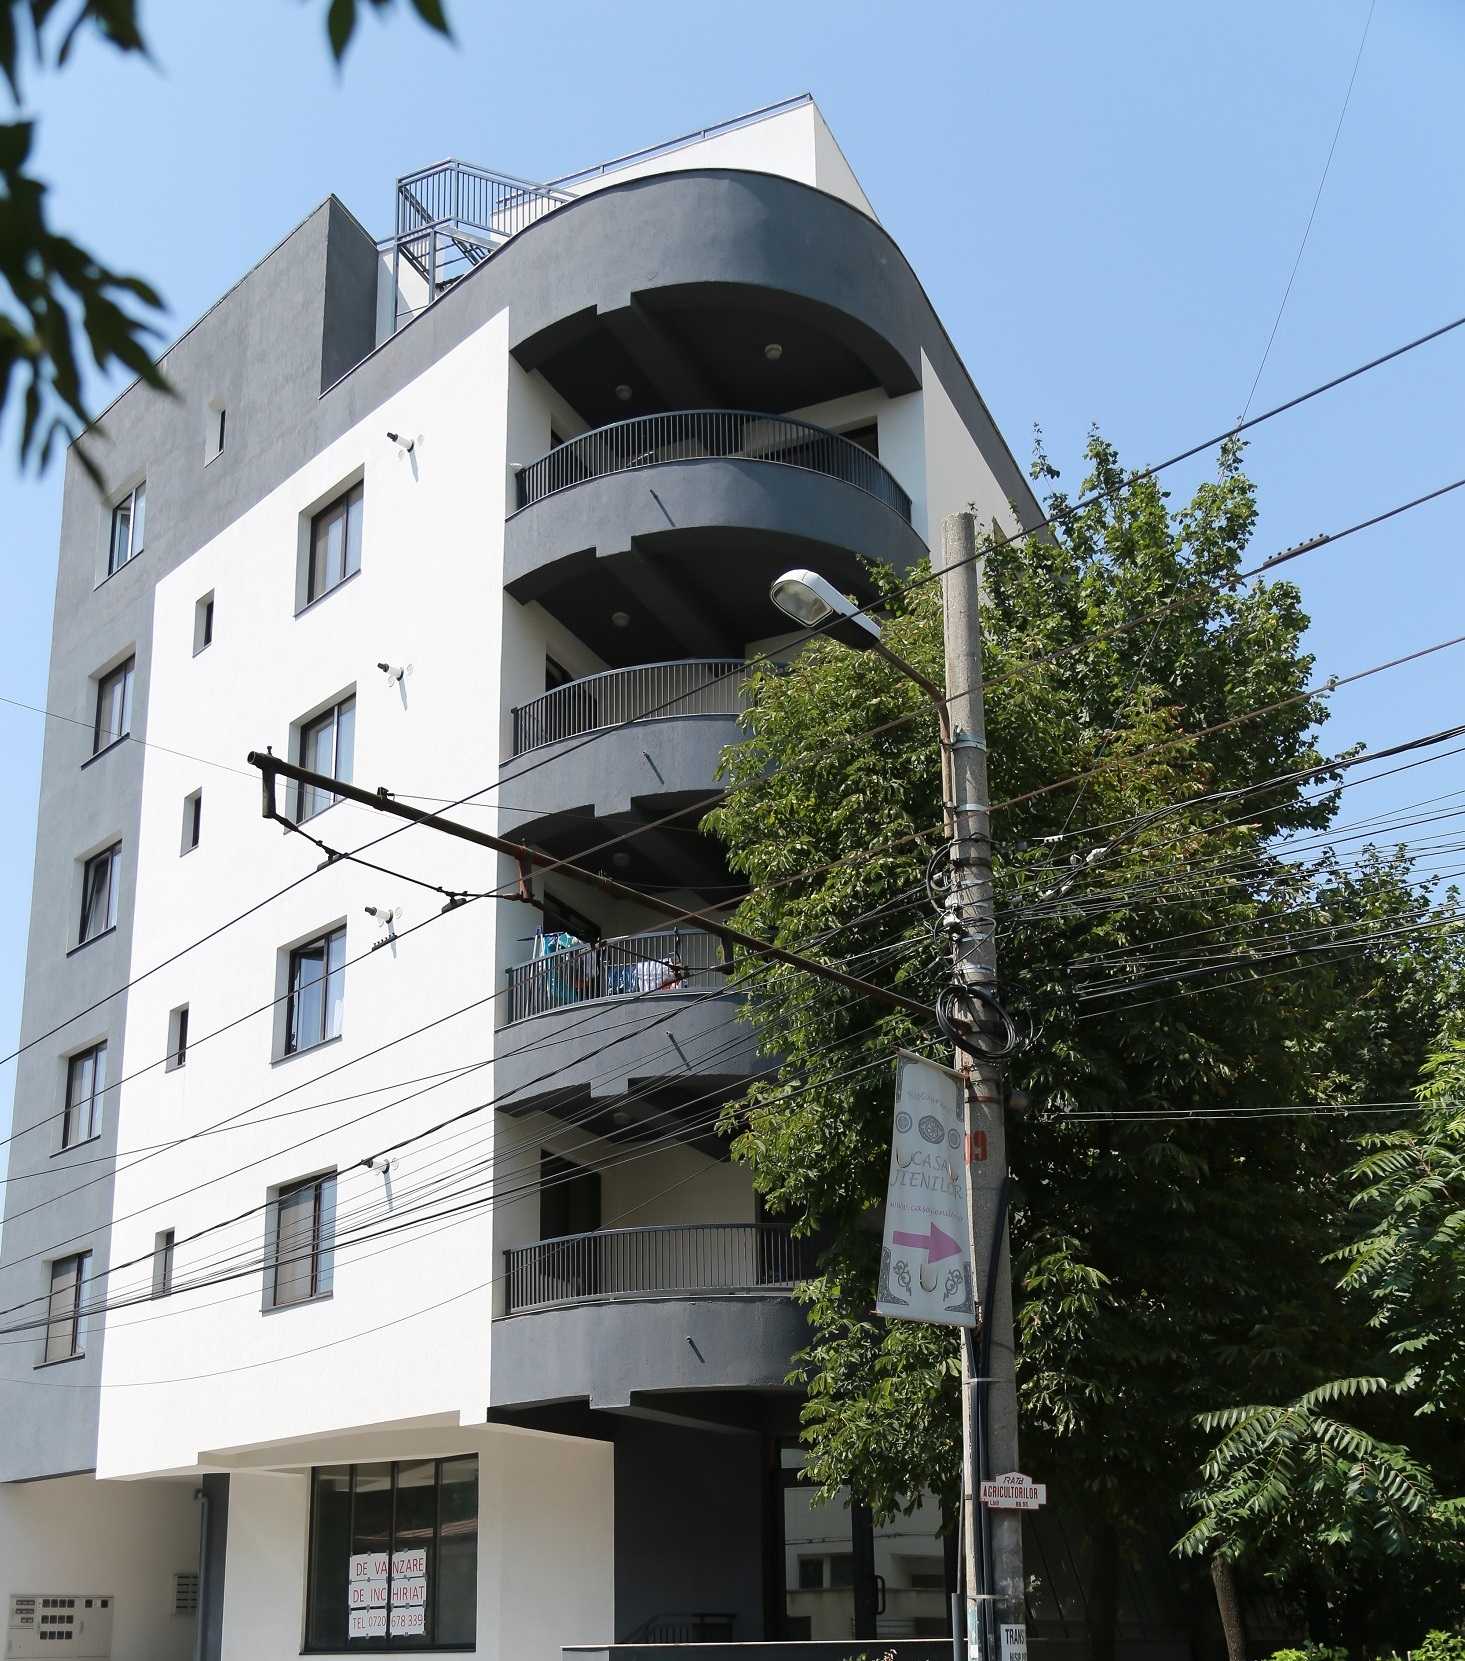 Matei Voievod Residence 1 în București